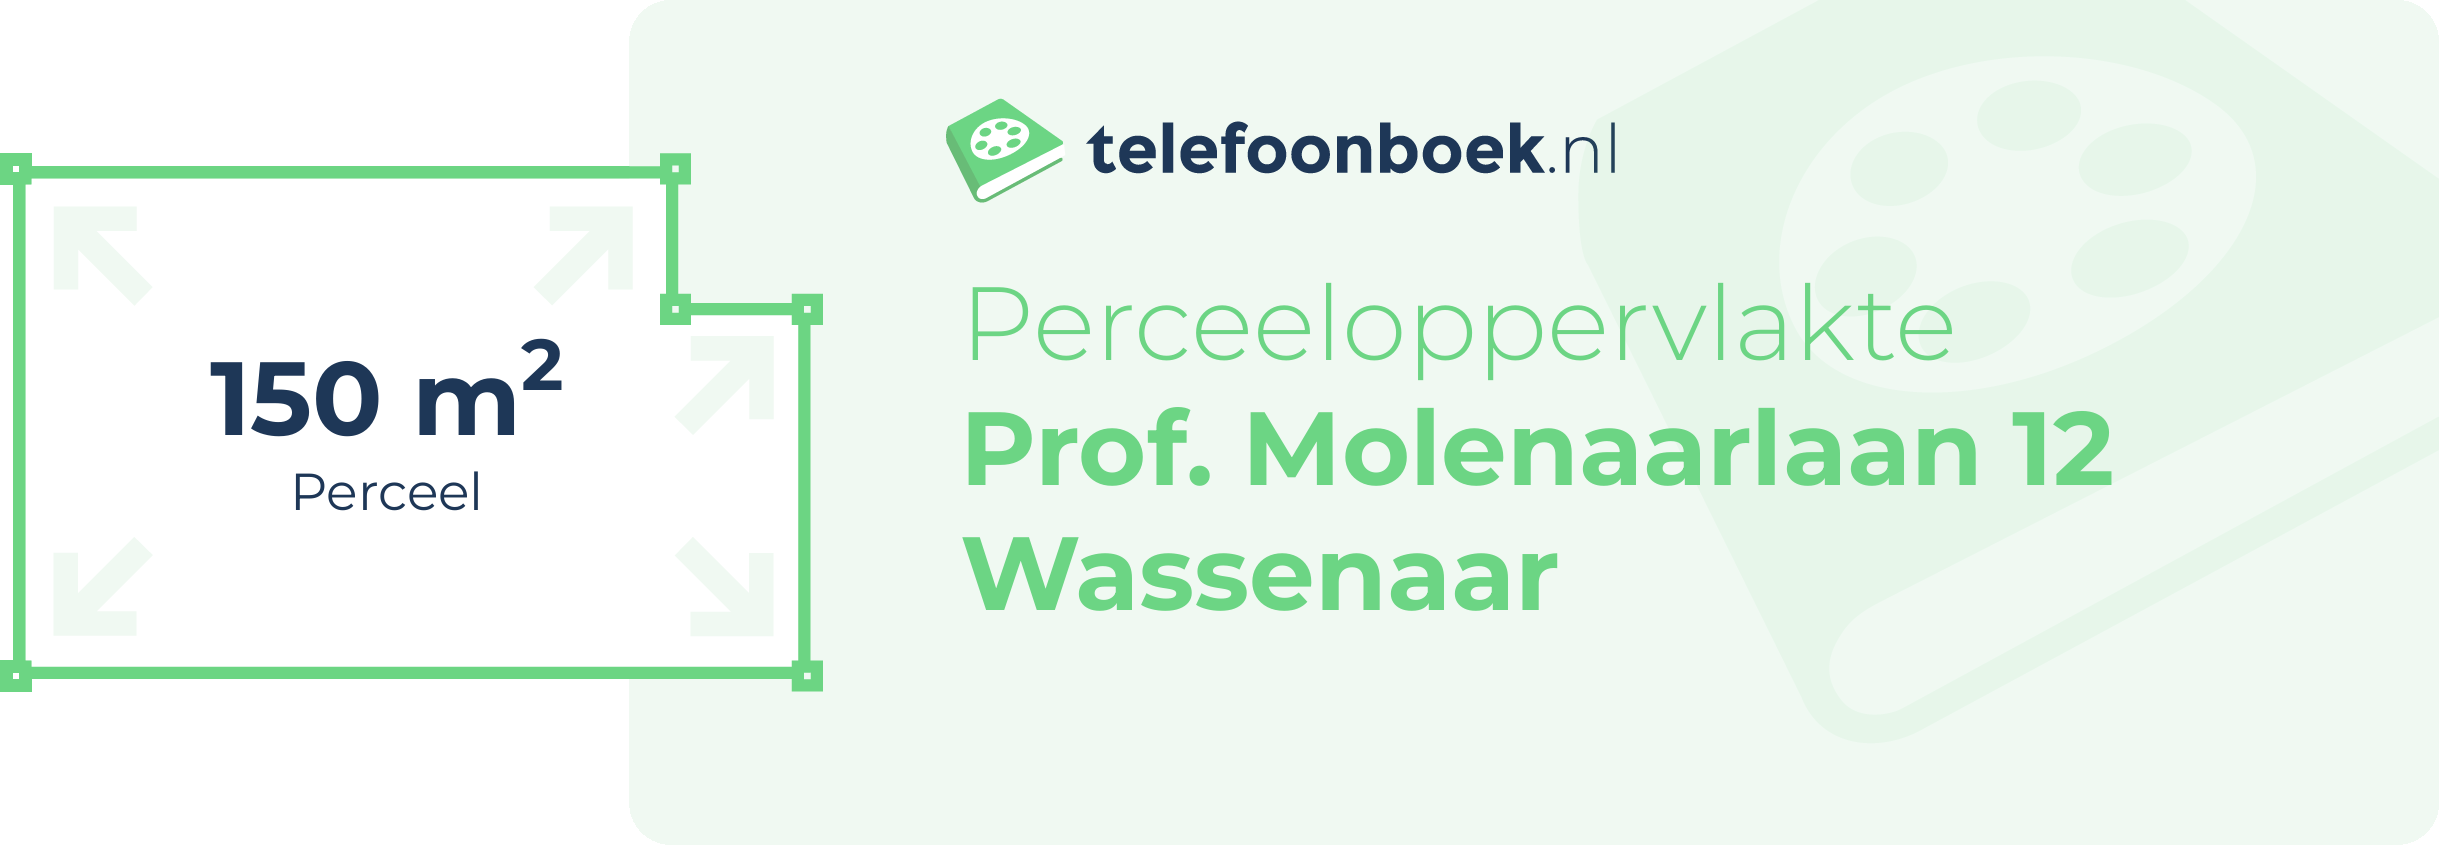 Perceeloppervlakte Prof. Molenaarlaan 12 Wassenaar